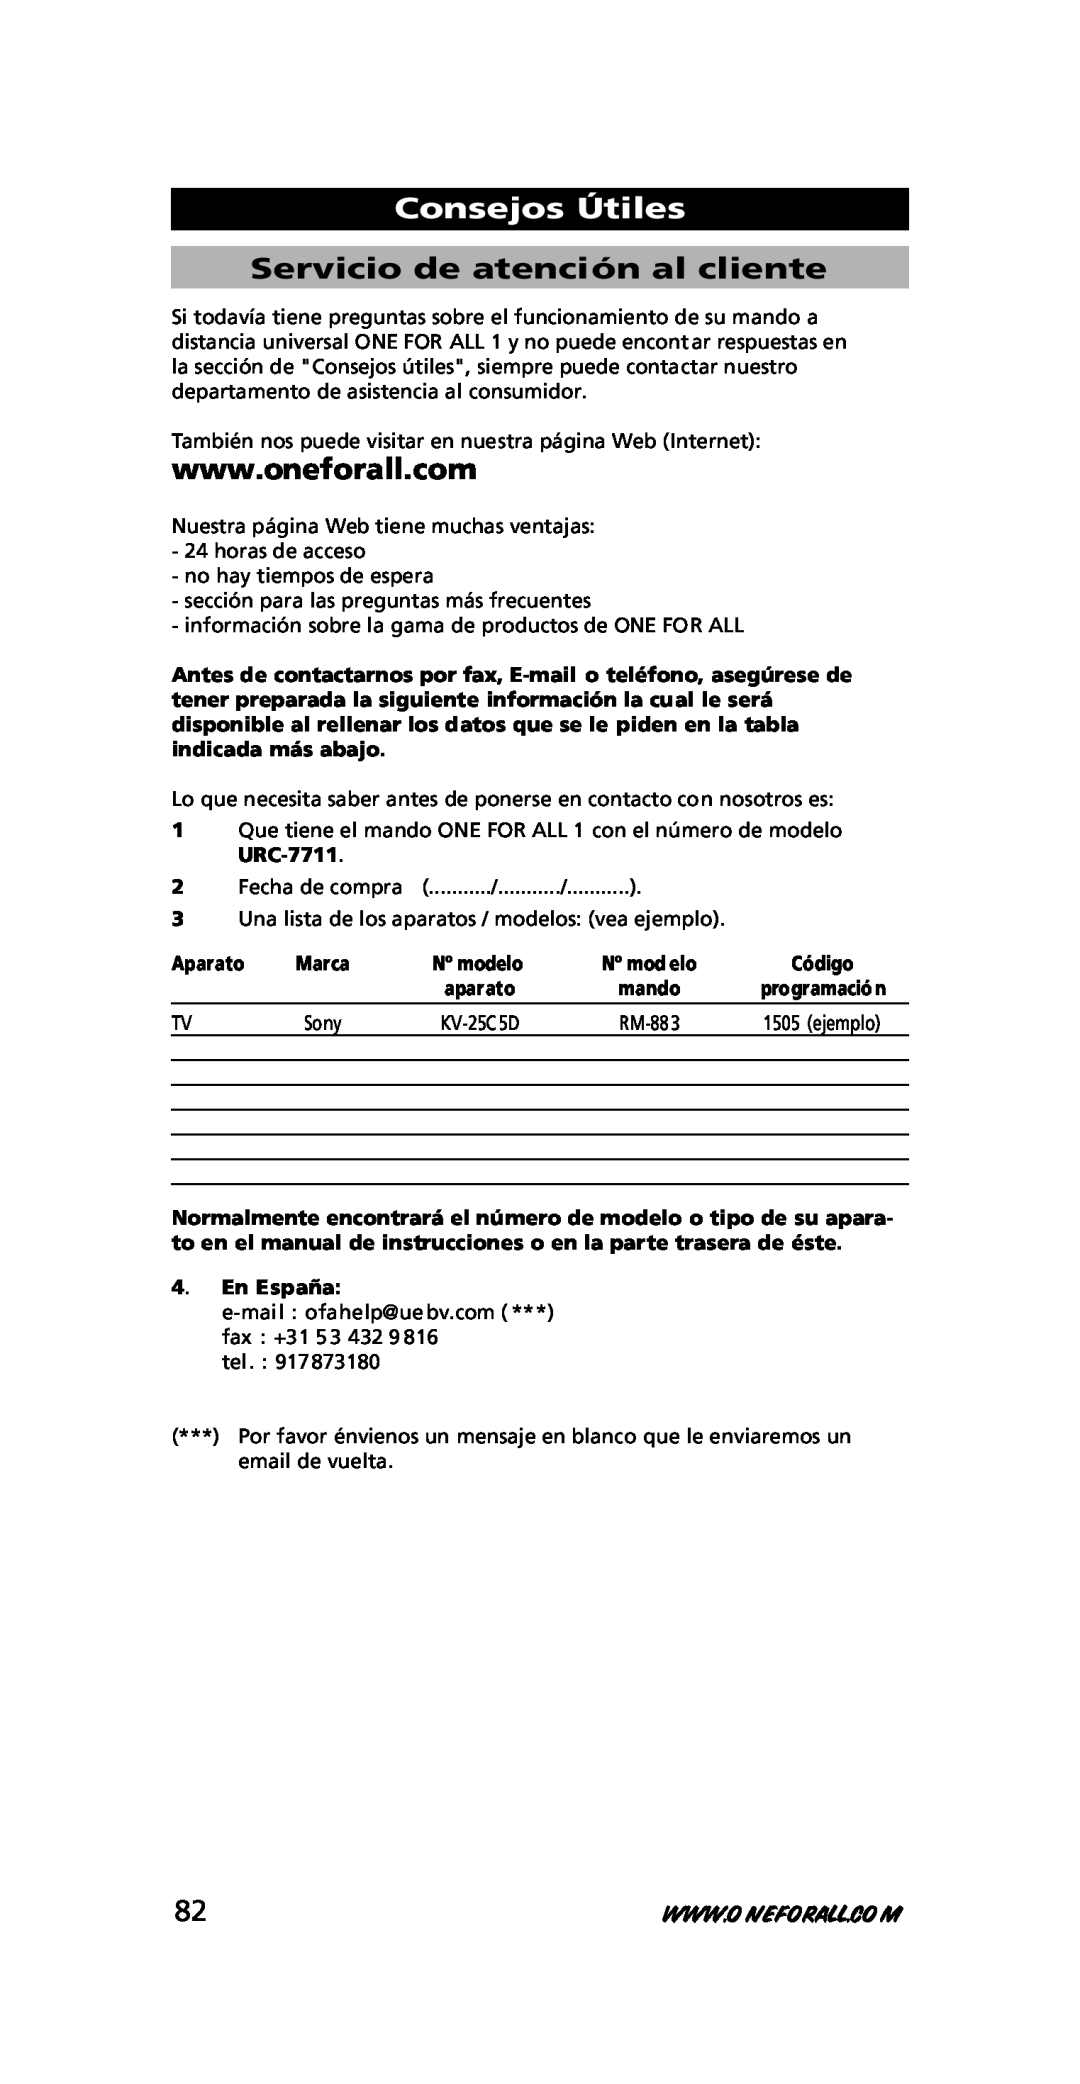 One for All URC-7711 instruction manual Servicio de atención al cliente, Consejos Útiles, Aparato, En España 